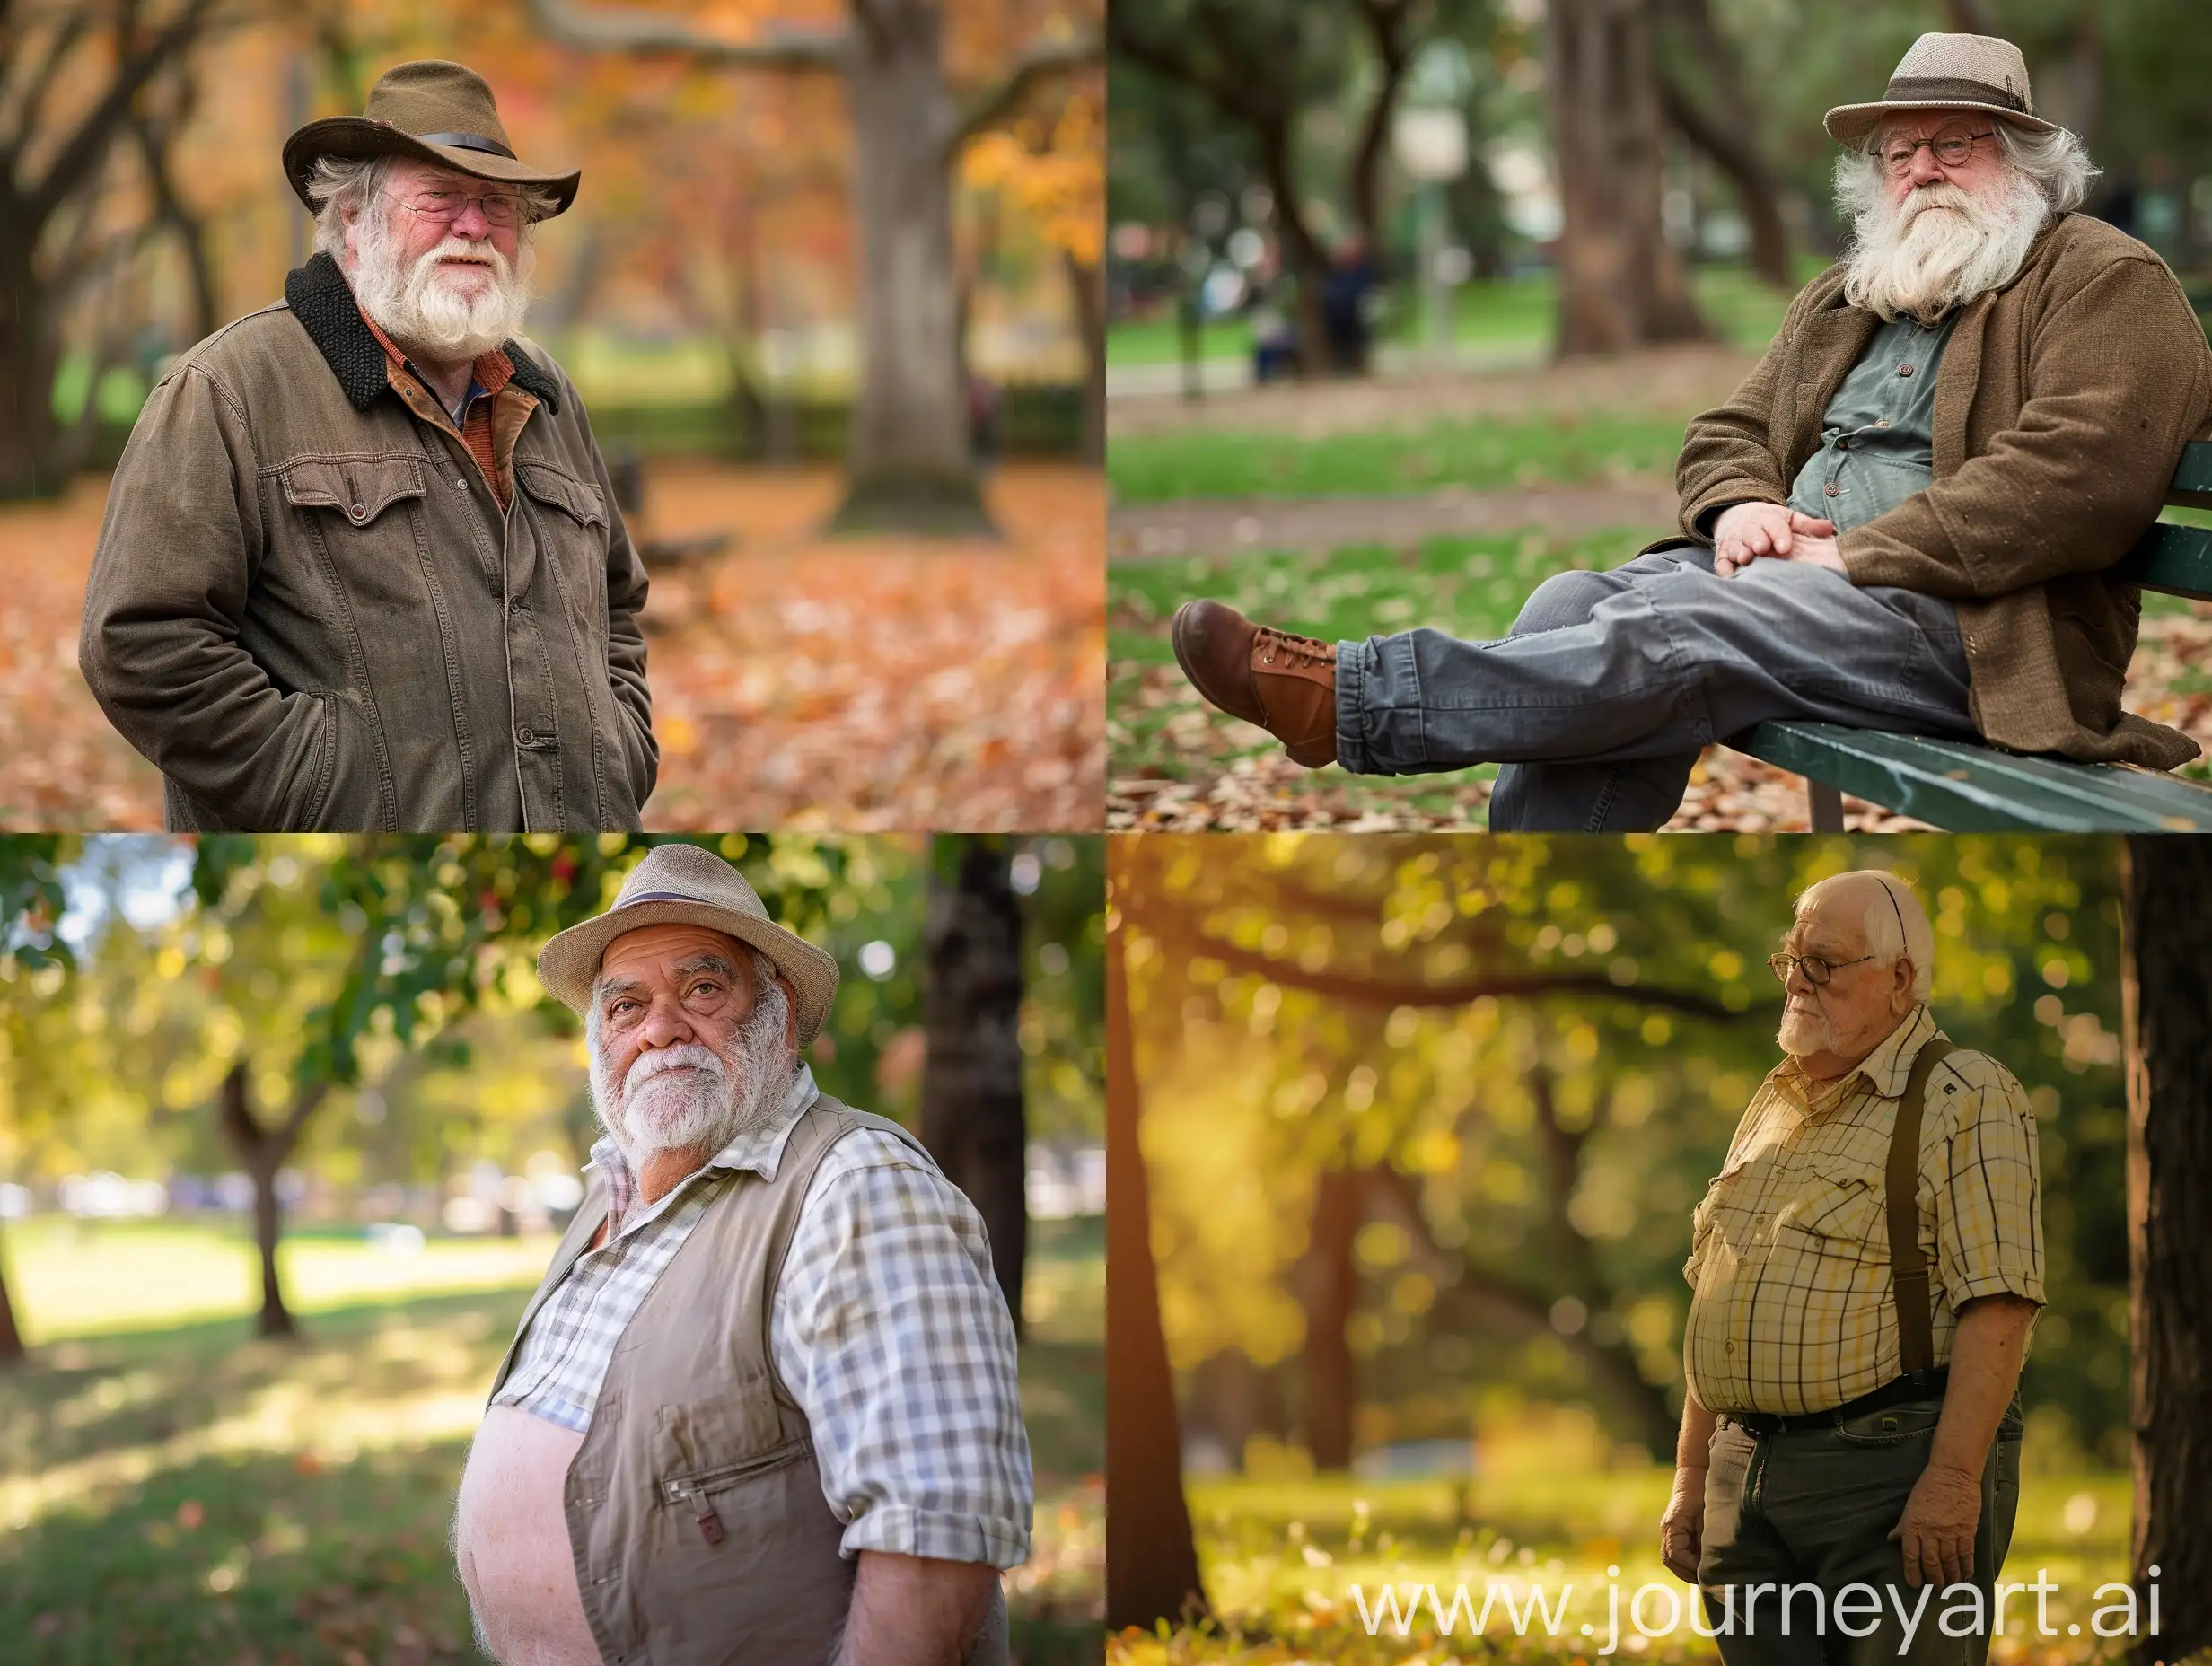 Elderly-Man-Enjoying-Nature-in-a-Serene-Park-Setting